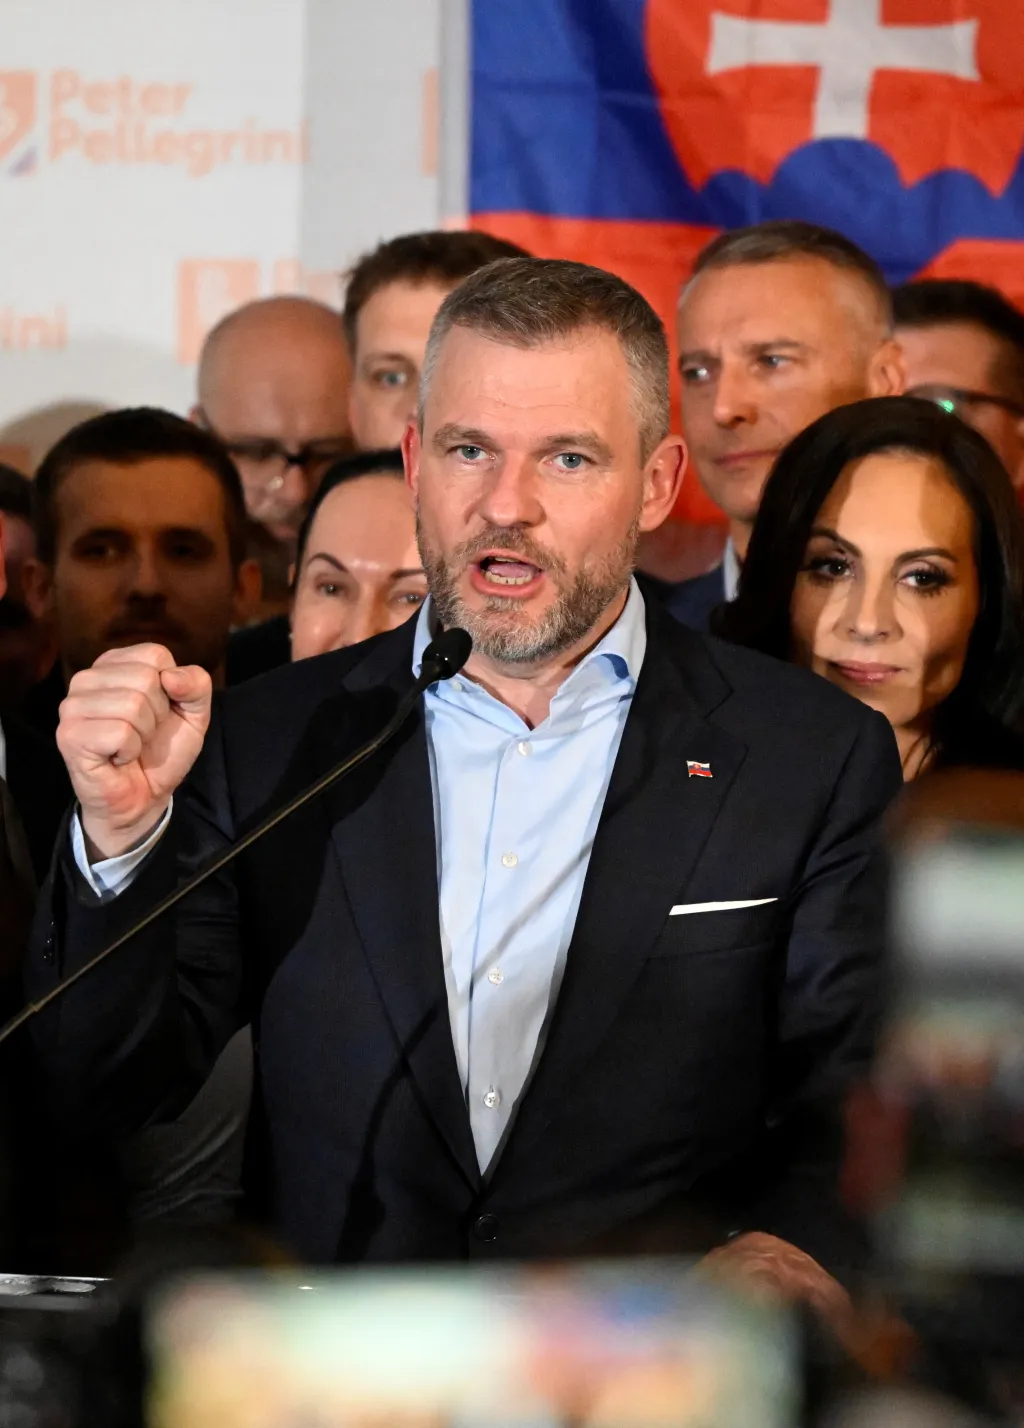 Peter Pellegrini hovoří ve svém volebním štábu v den vyhlášení výsledků prezidentských voleb v Bratislavě